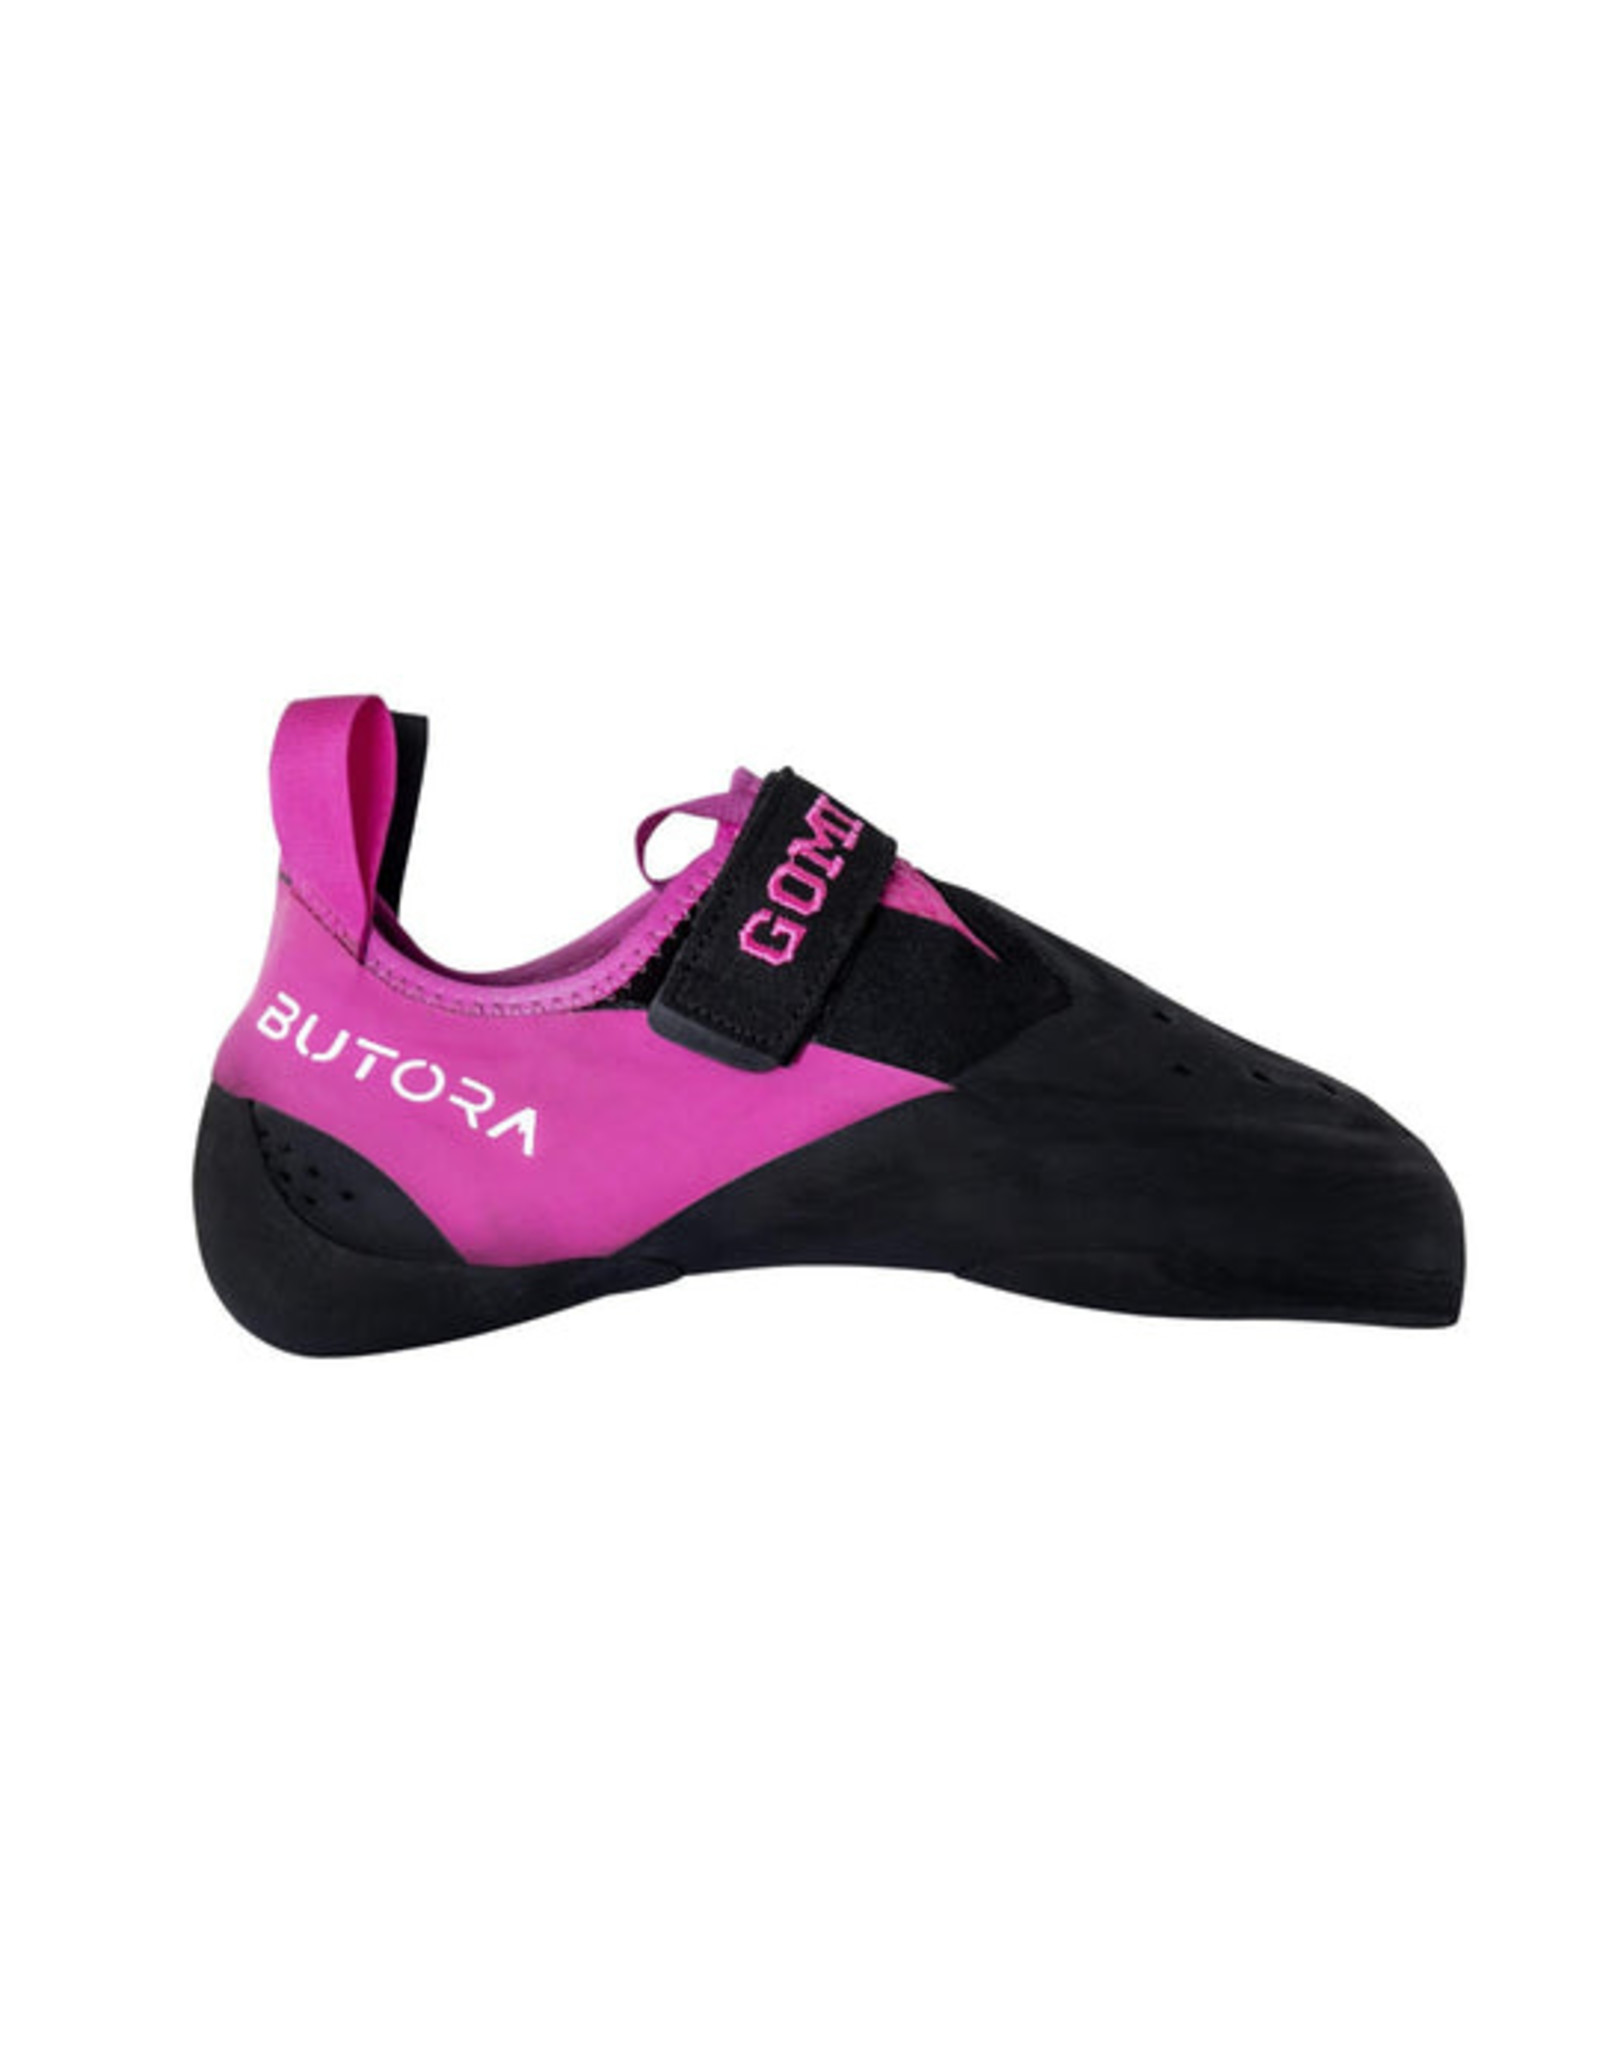 Butora Climbing Gomi Narrow Fit Climbing Shoe - Pink